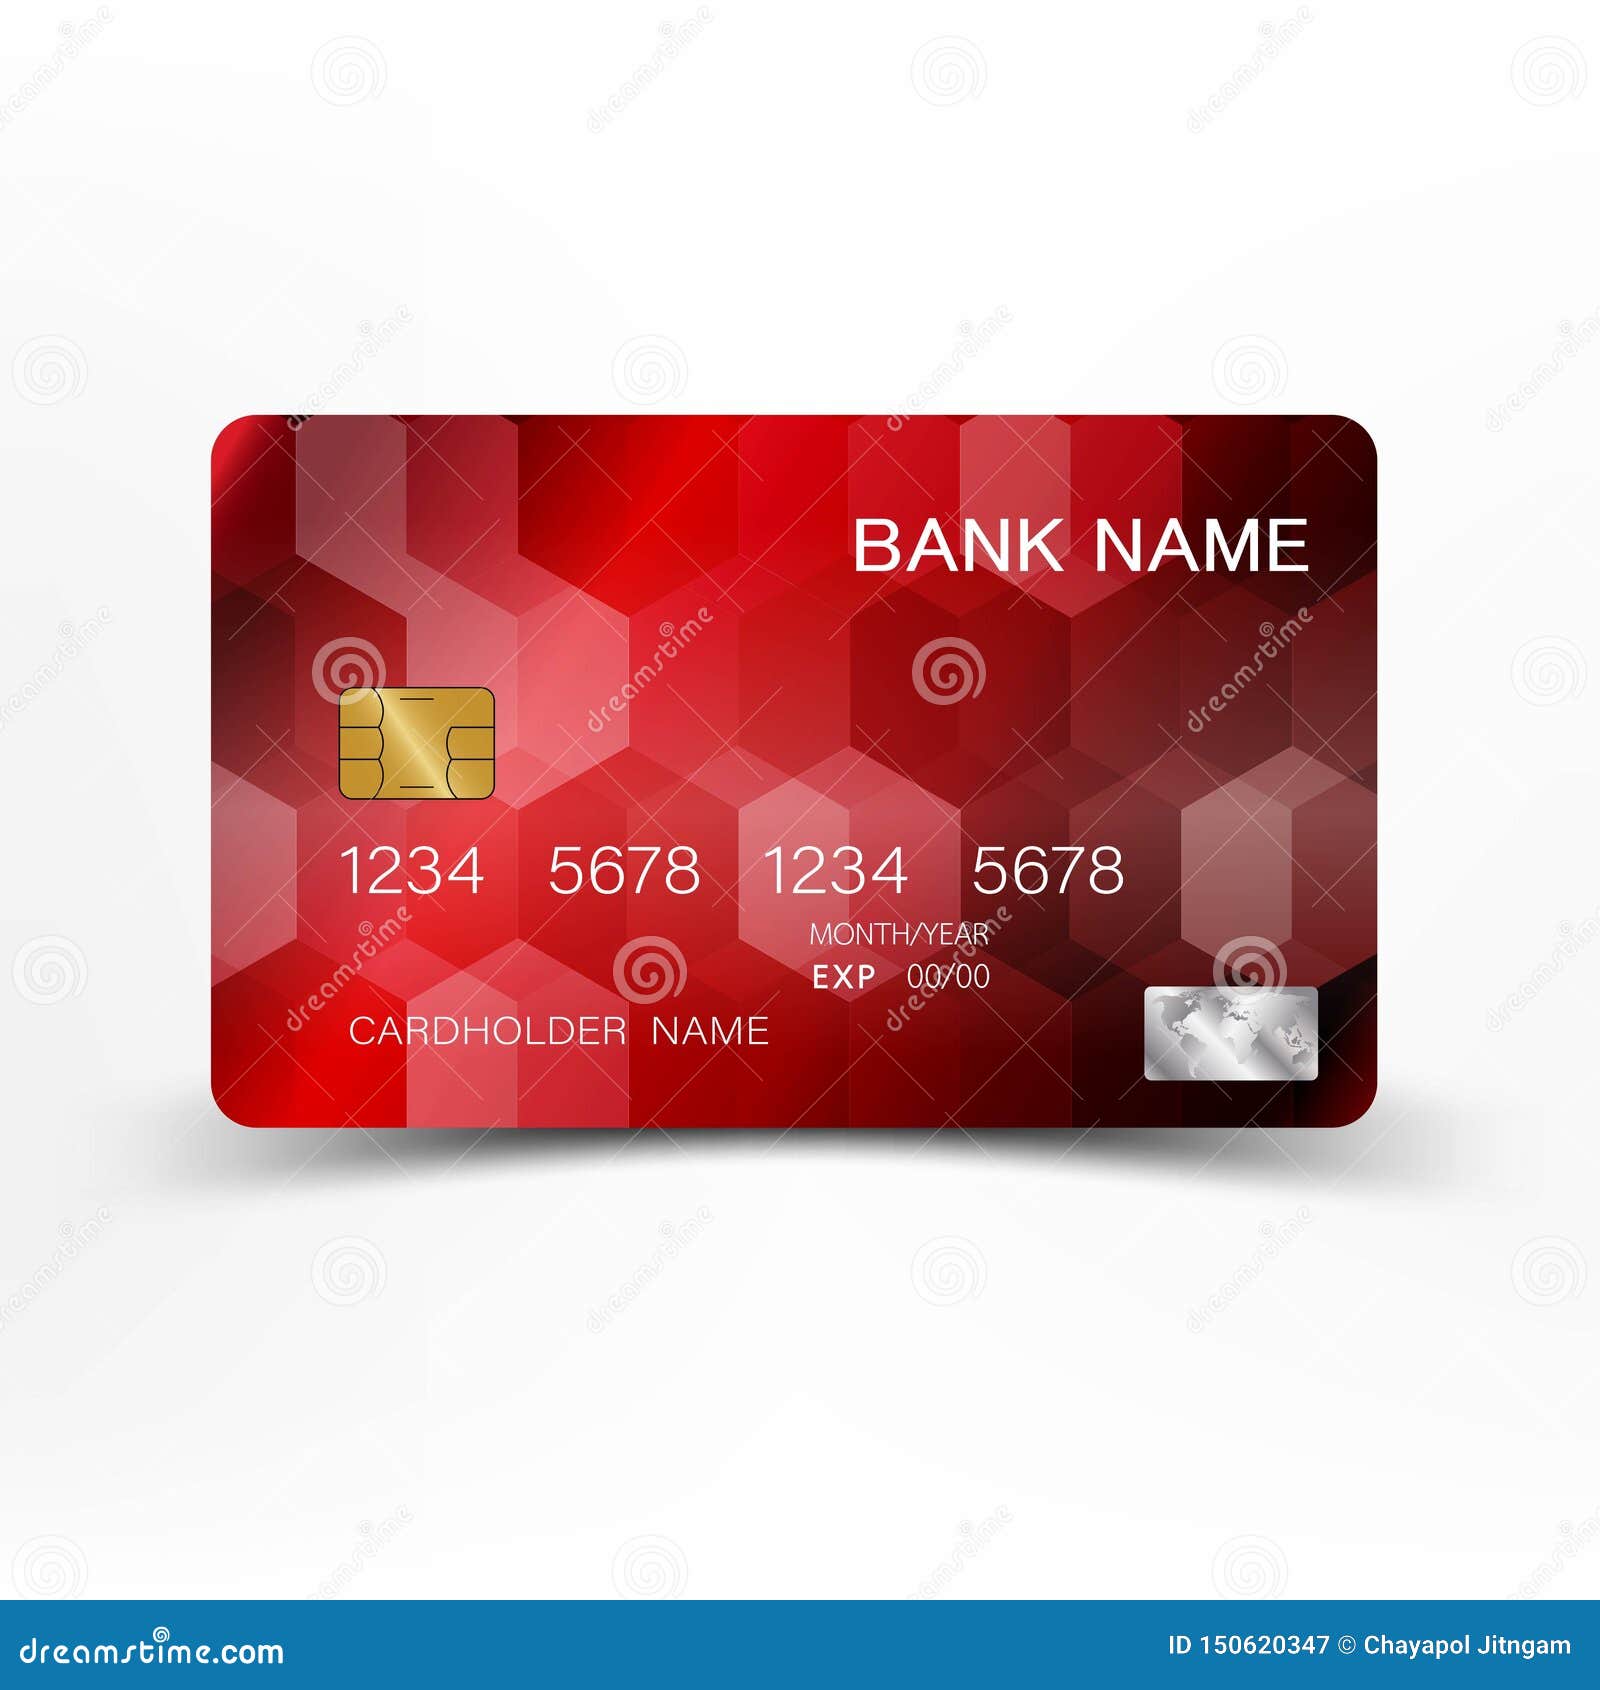 Realistic Detailed Red Credit Card Design. Ilustração do